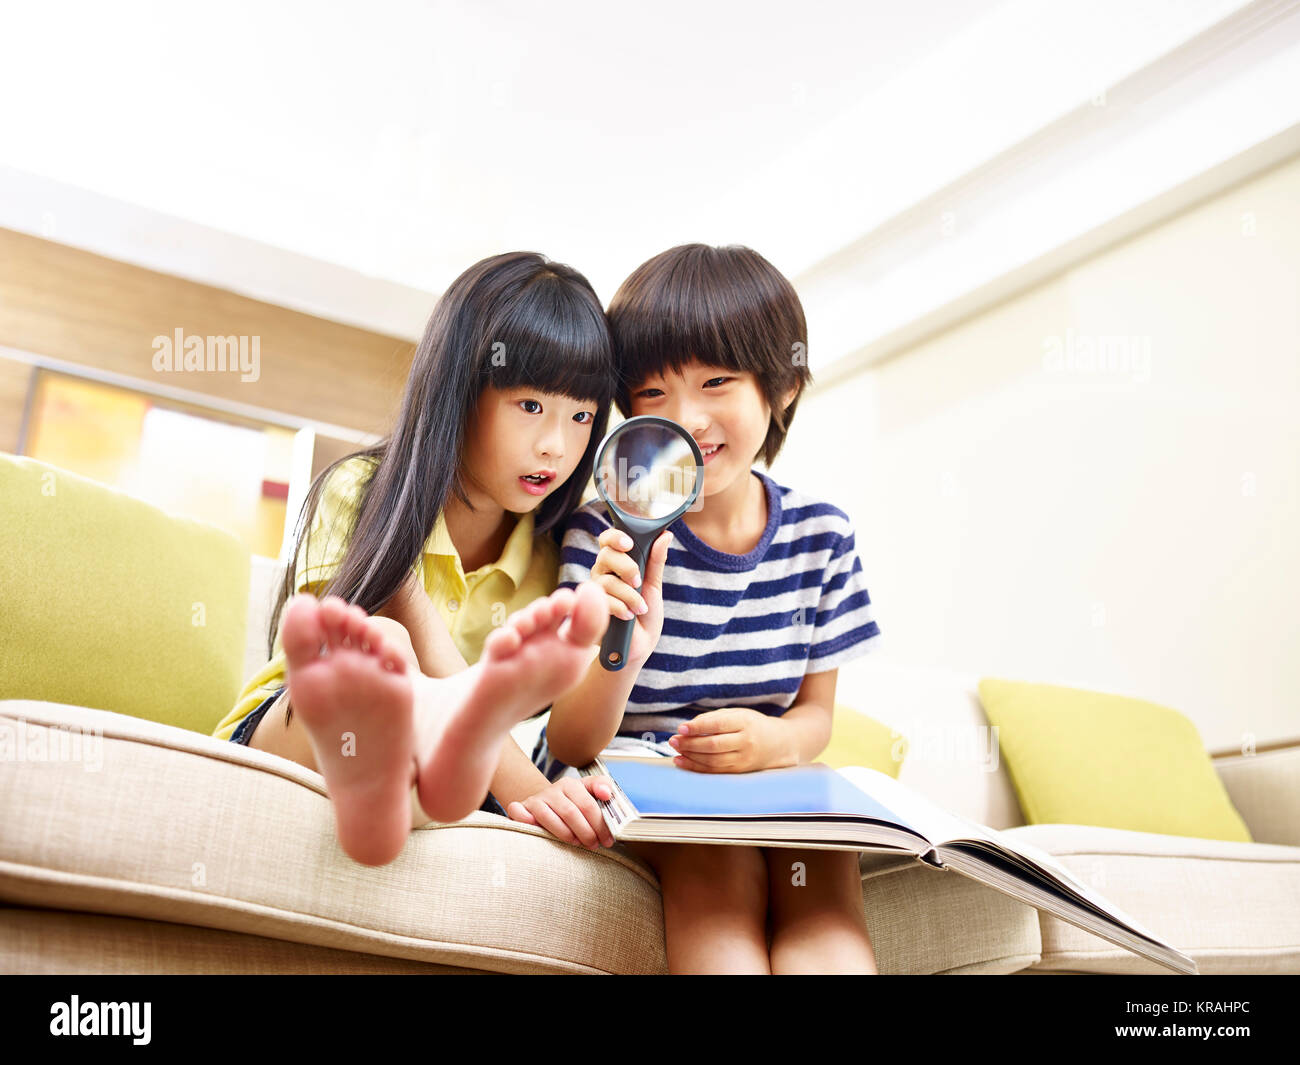 Zwei asiatische Kinder sitzen auf der Couch zu Hause spielt, mit einer Lupe, Low Angle View. Stockfoto